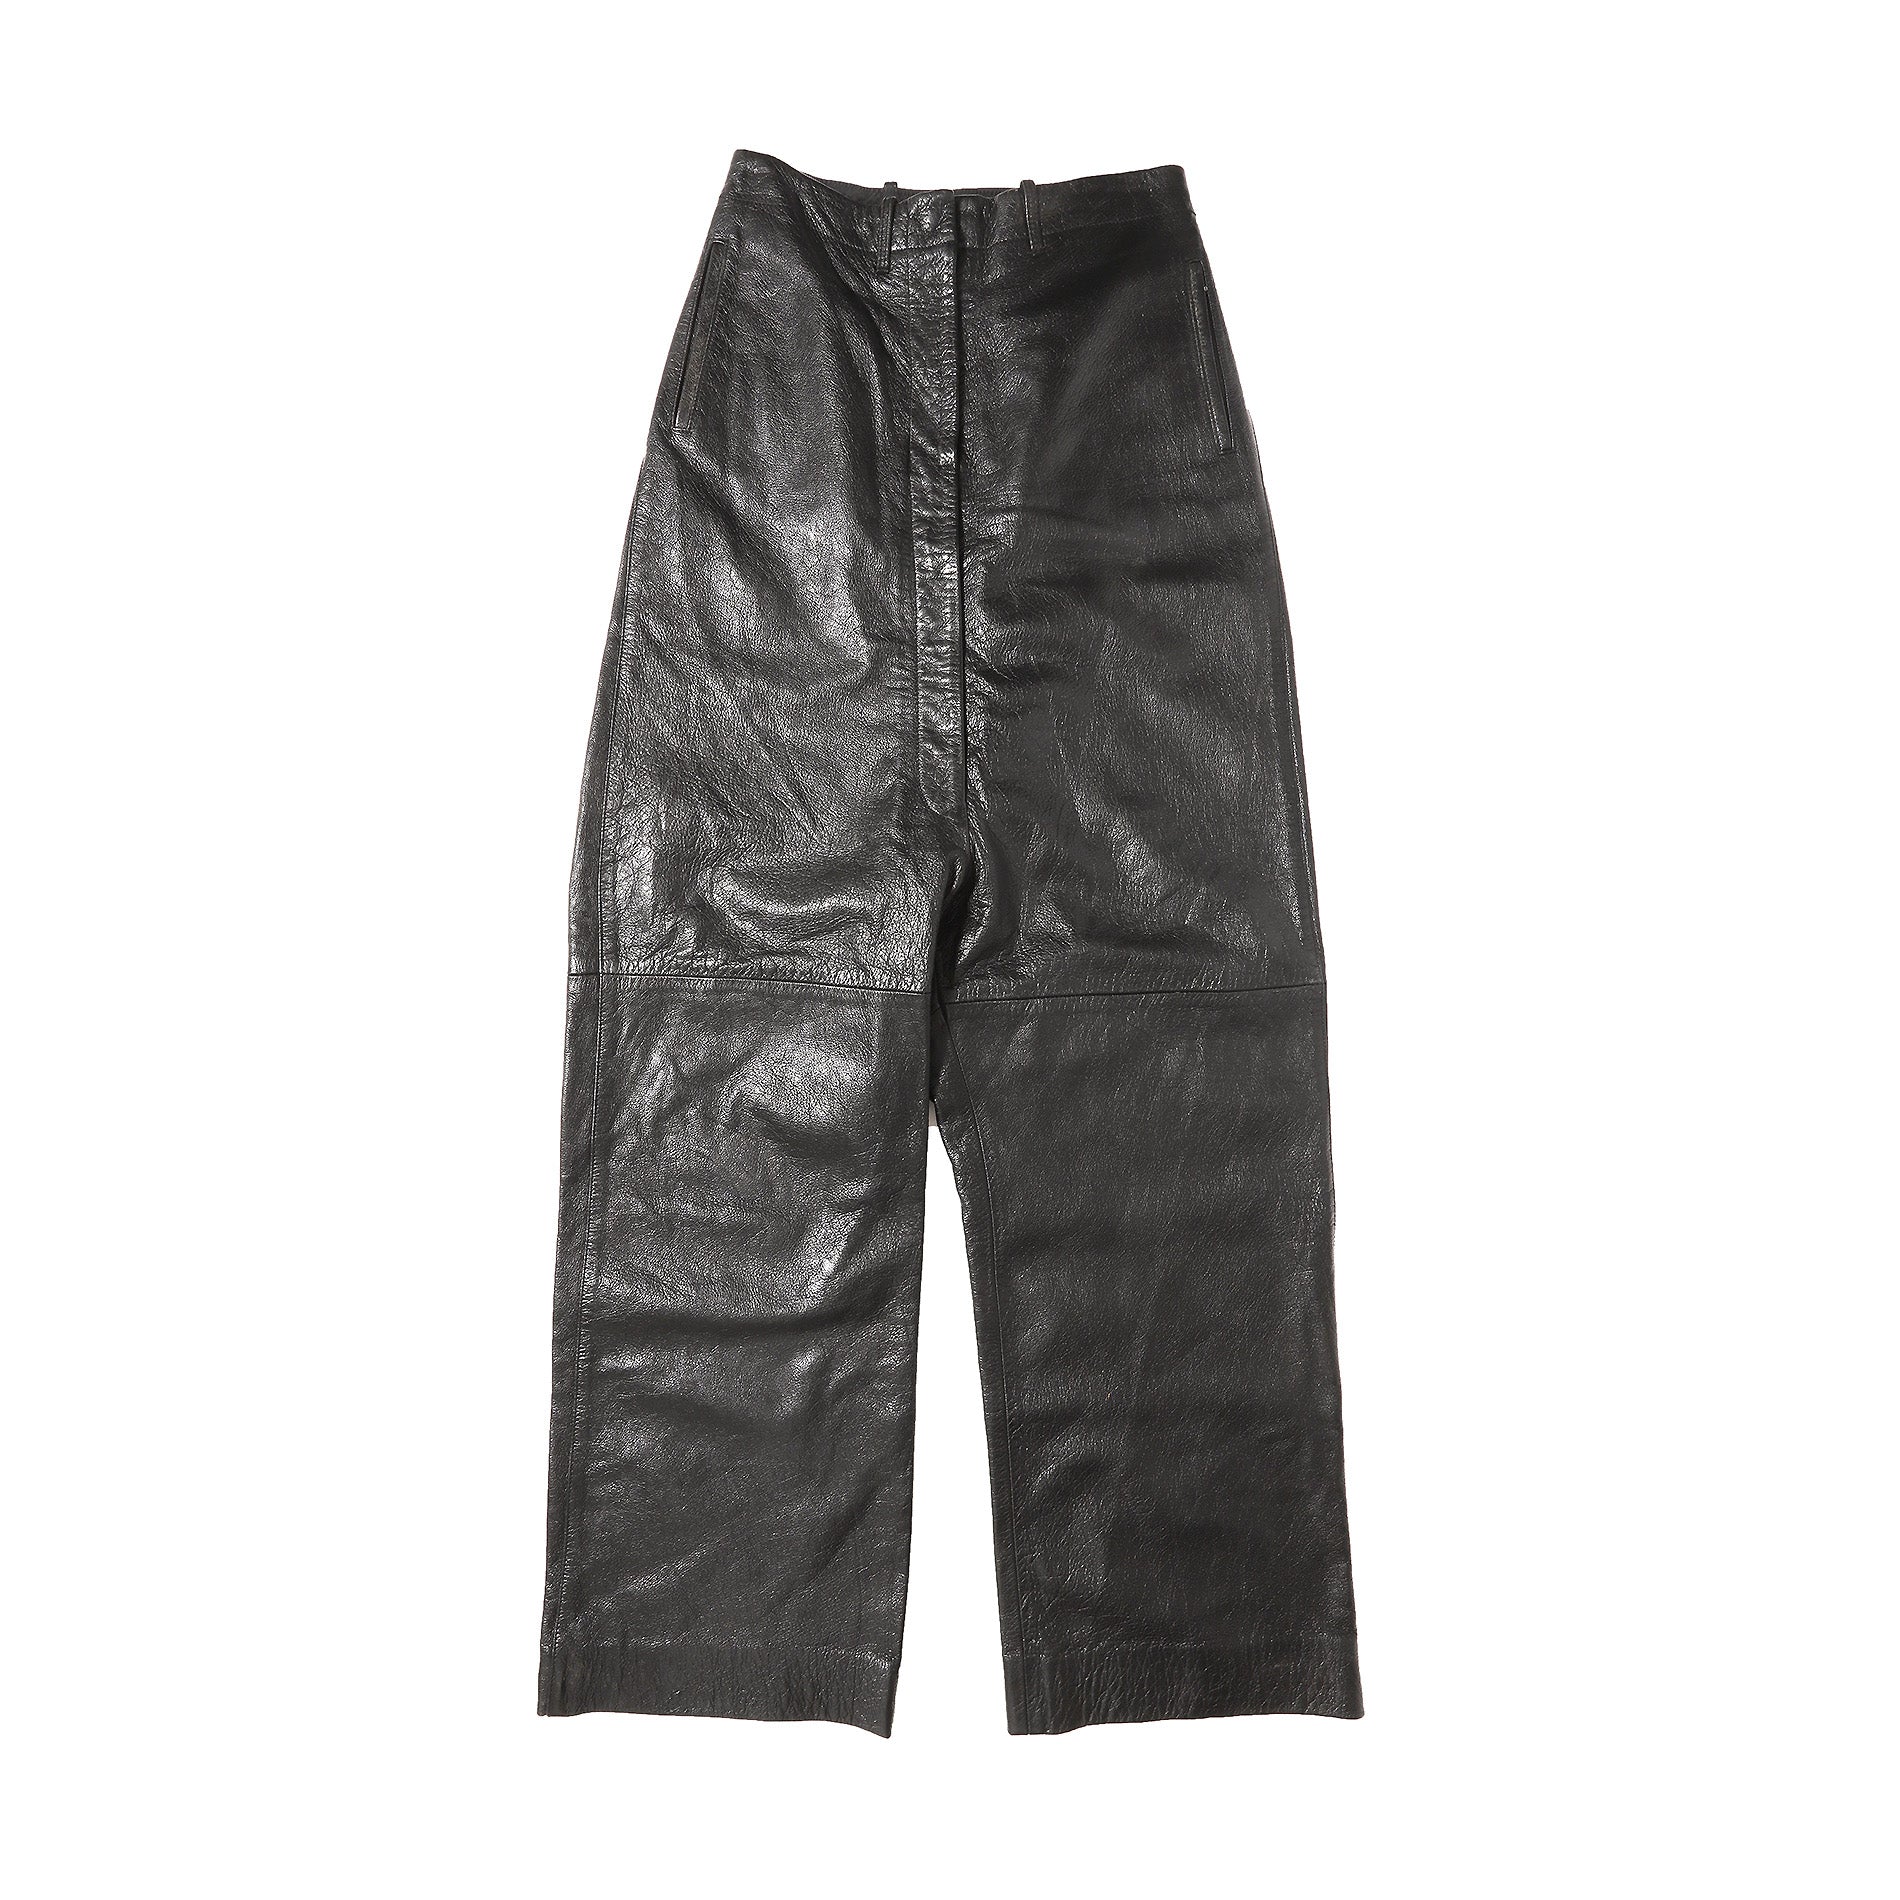 Maison Martin Margiela AW04 Oversized Leather Pants